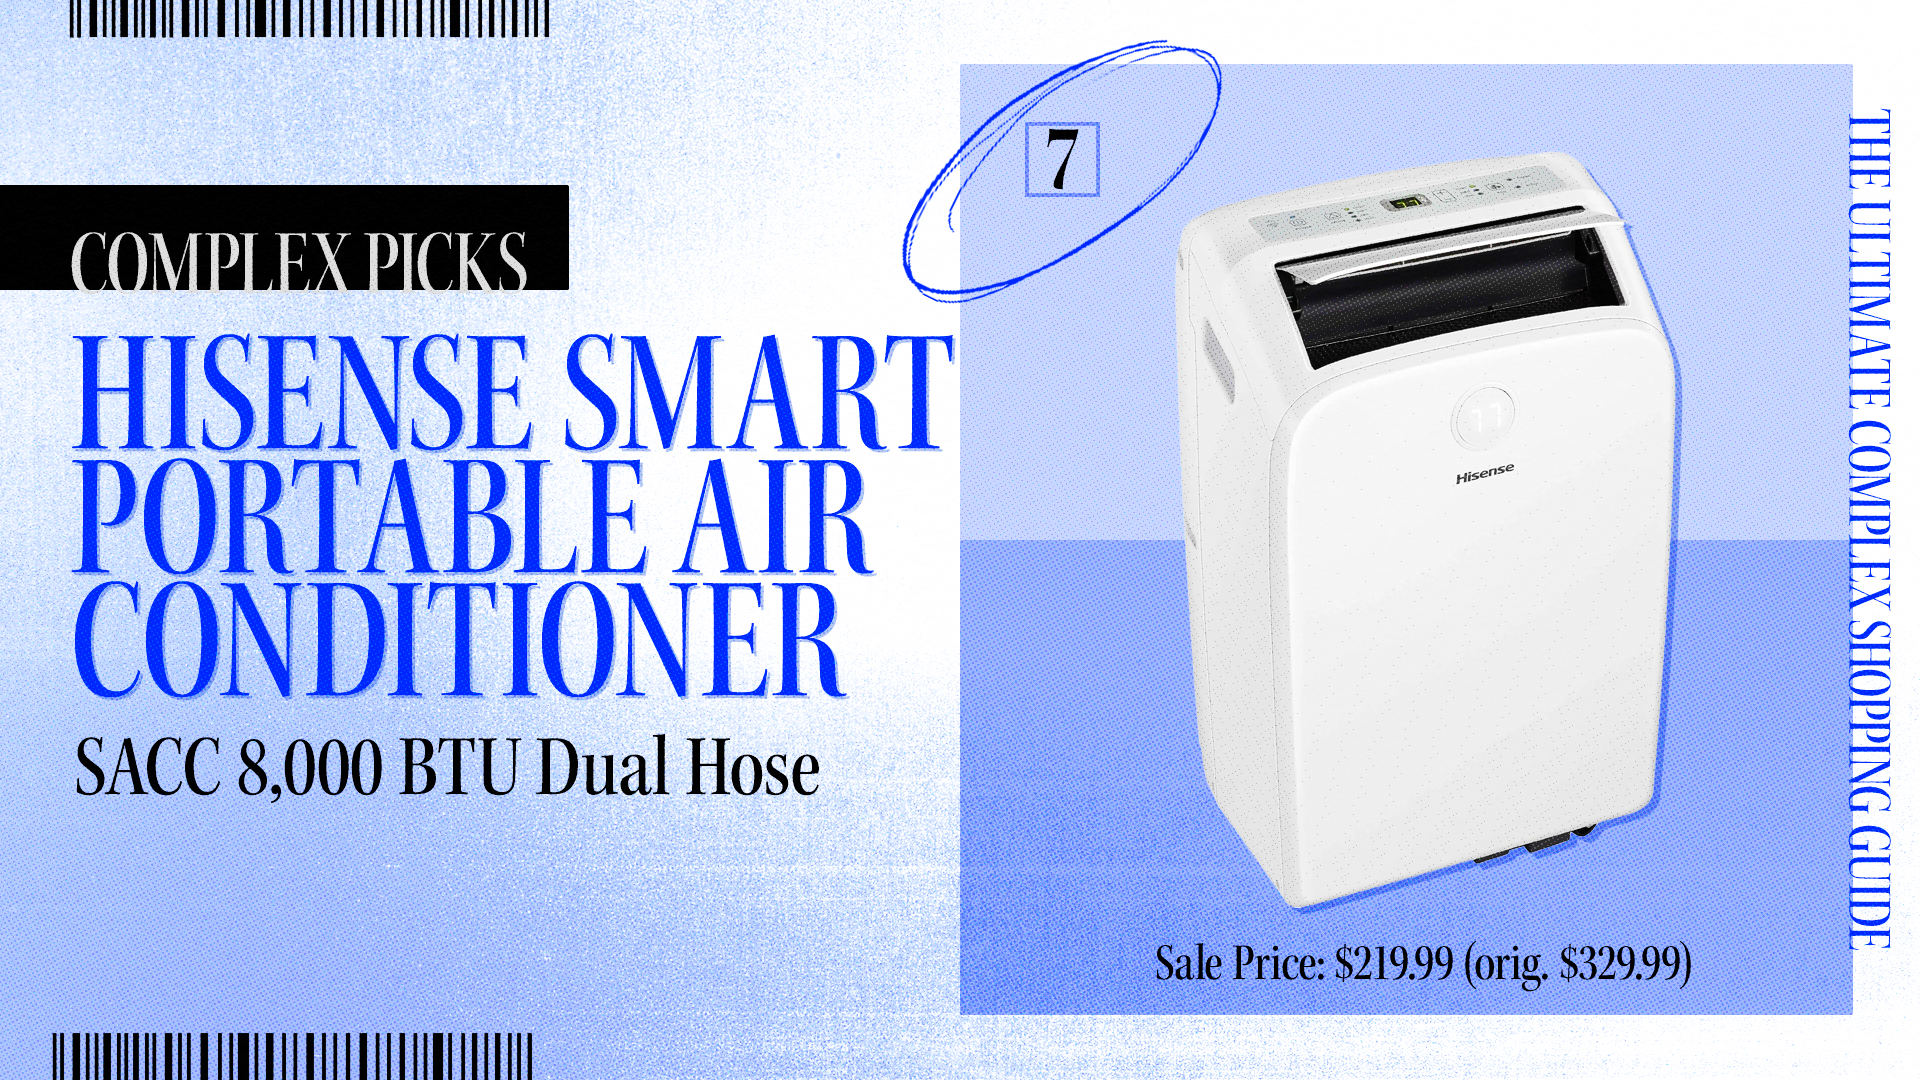 Ad for Hisense Smart Portable Air Conditioner with 8,000 BTU Dual Hose. Sale Price: $219.99, originally $329.99